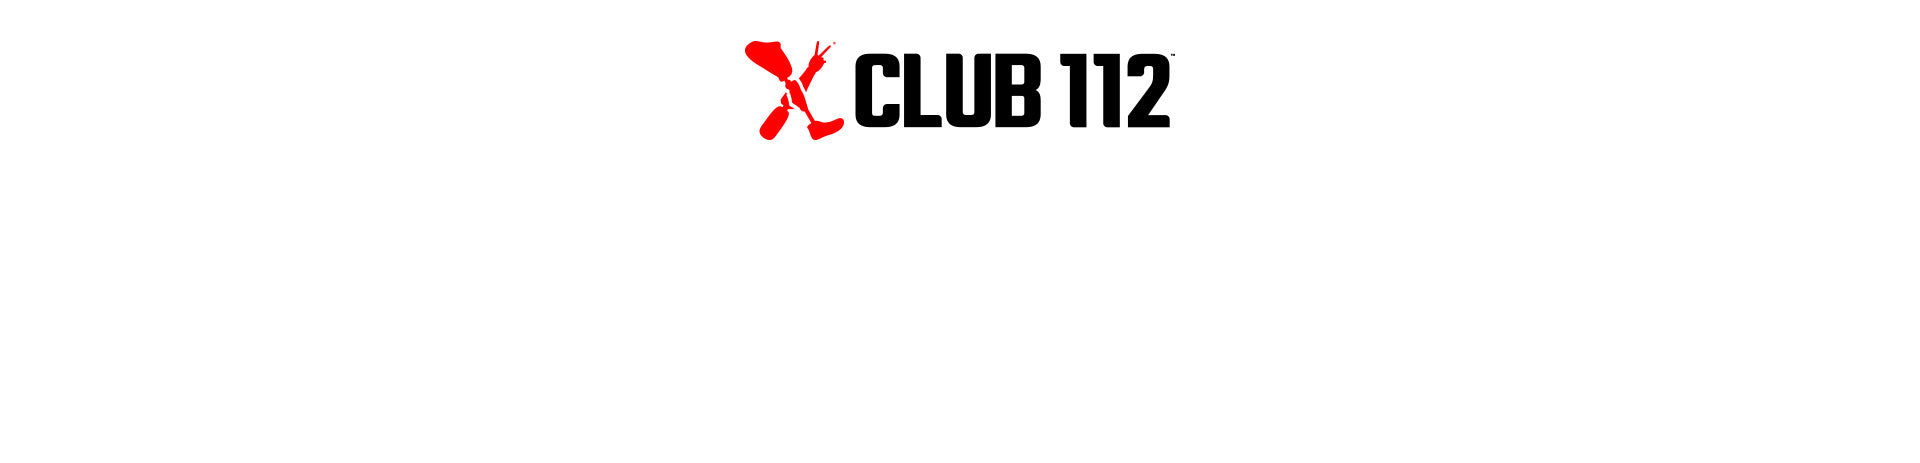 Club 112™ logo